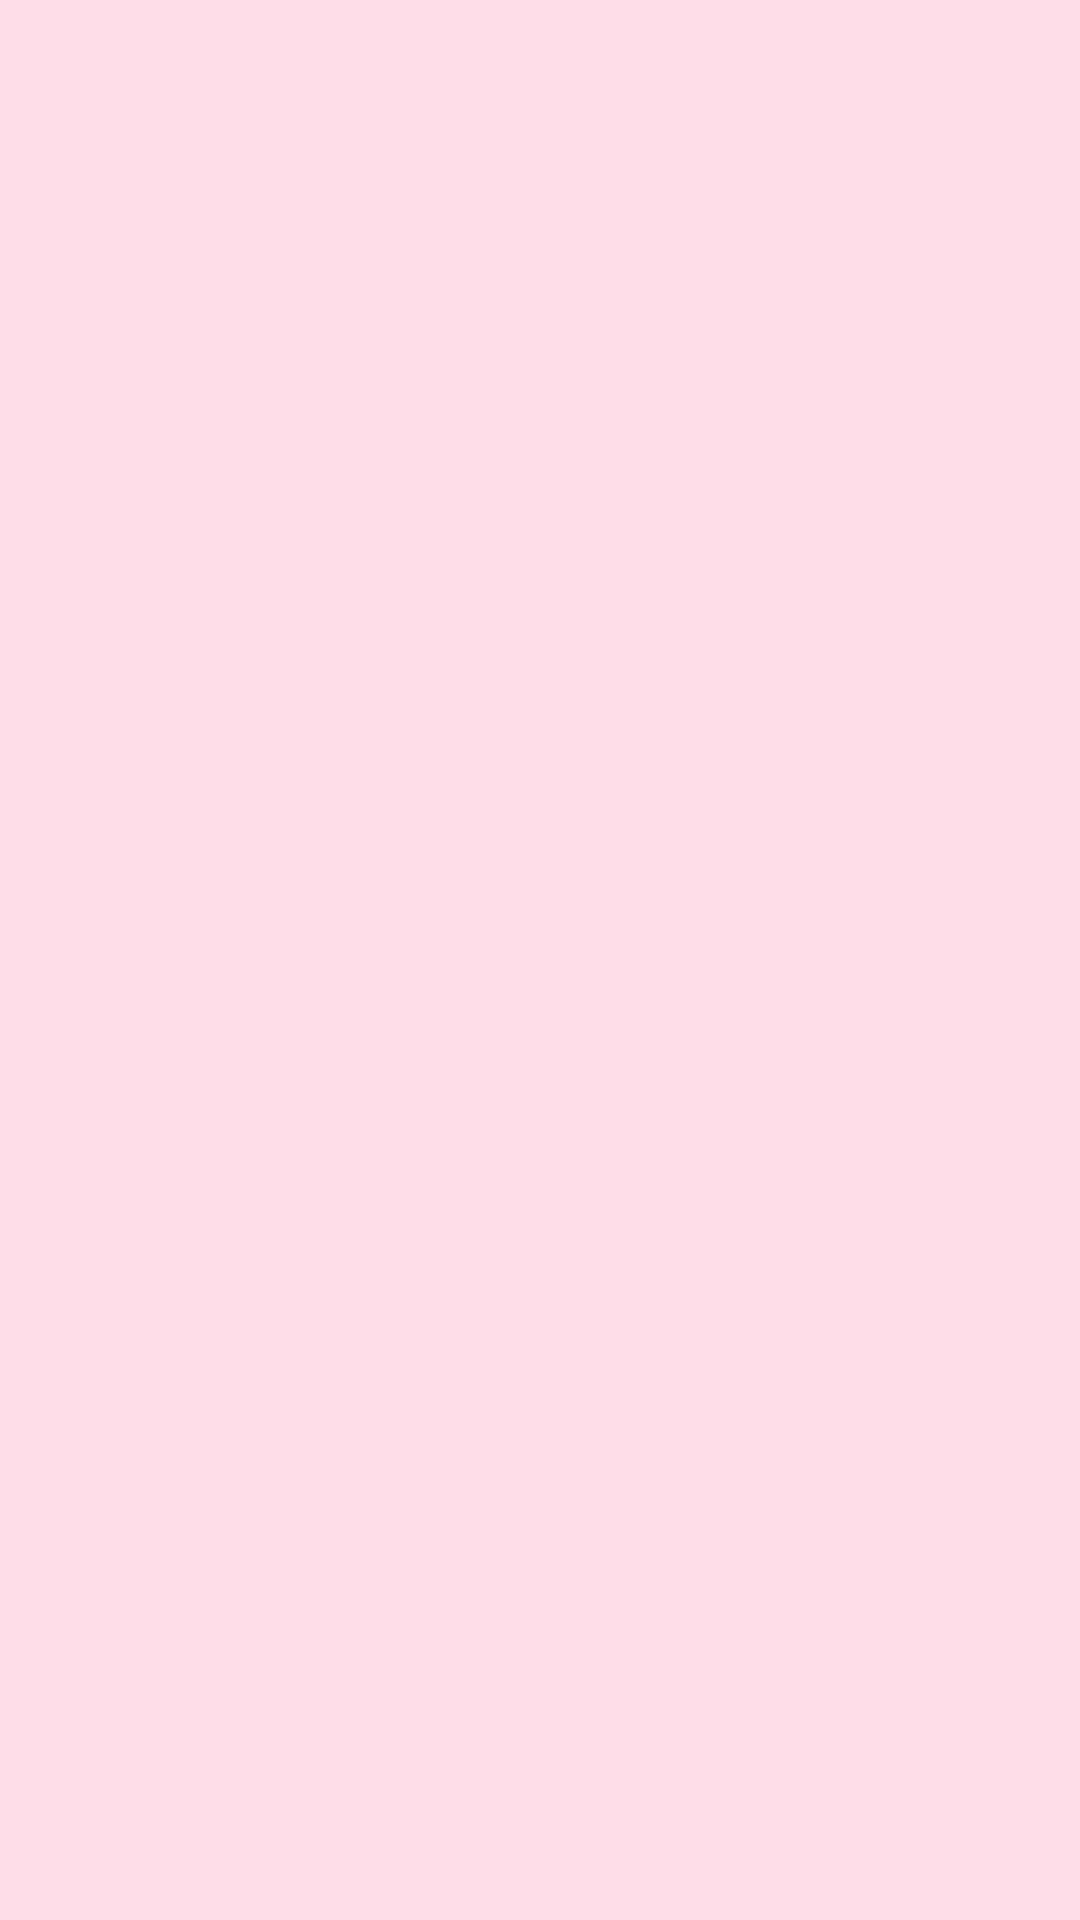 Solid Pastel Pink Wallpapers - Top Những Hình Ảnh Đẹp